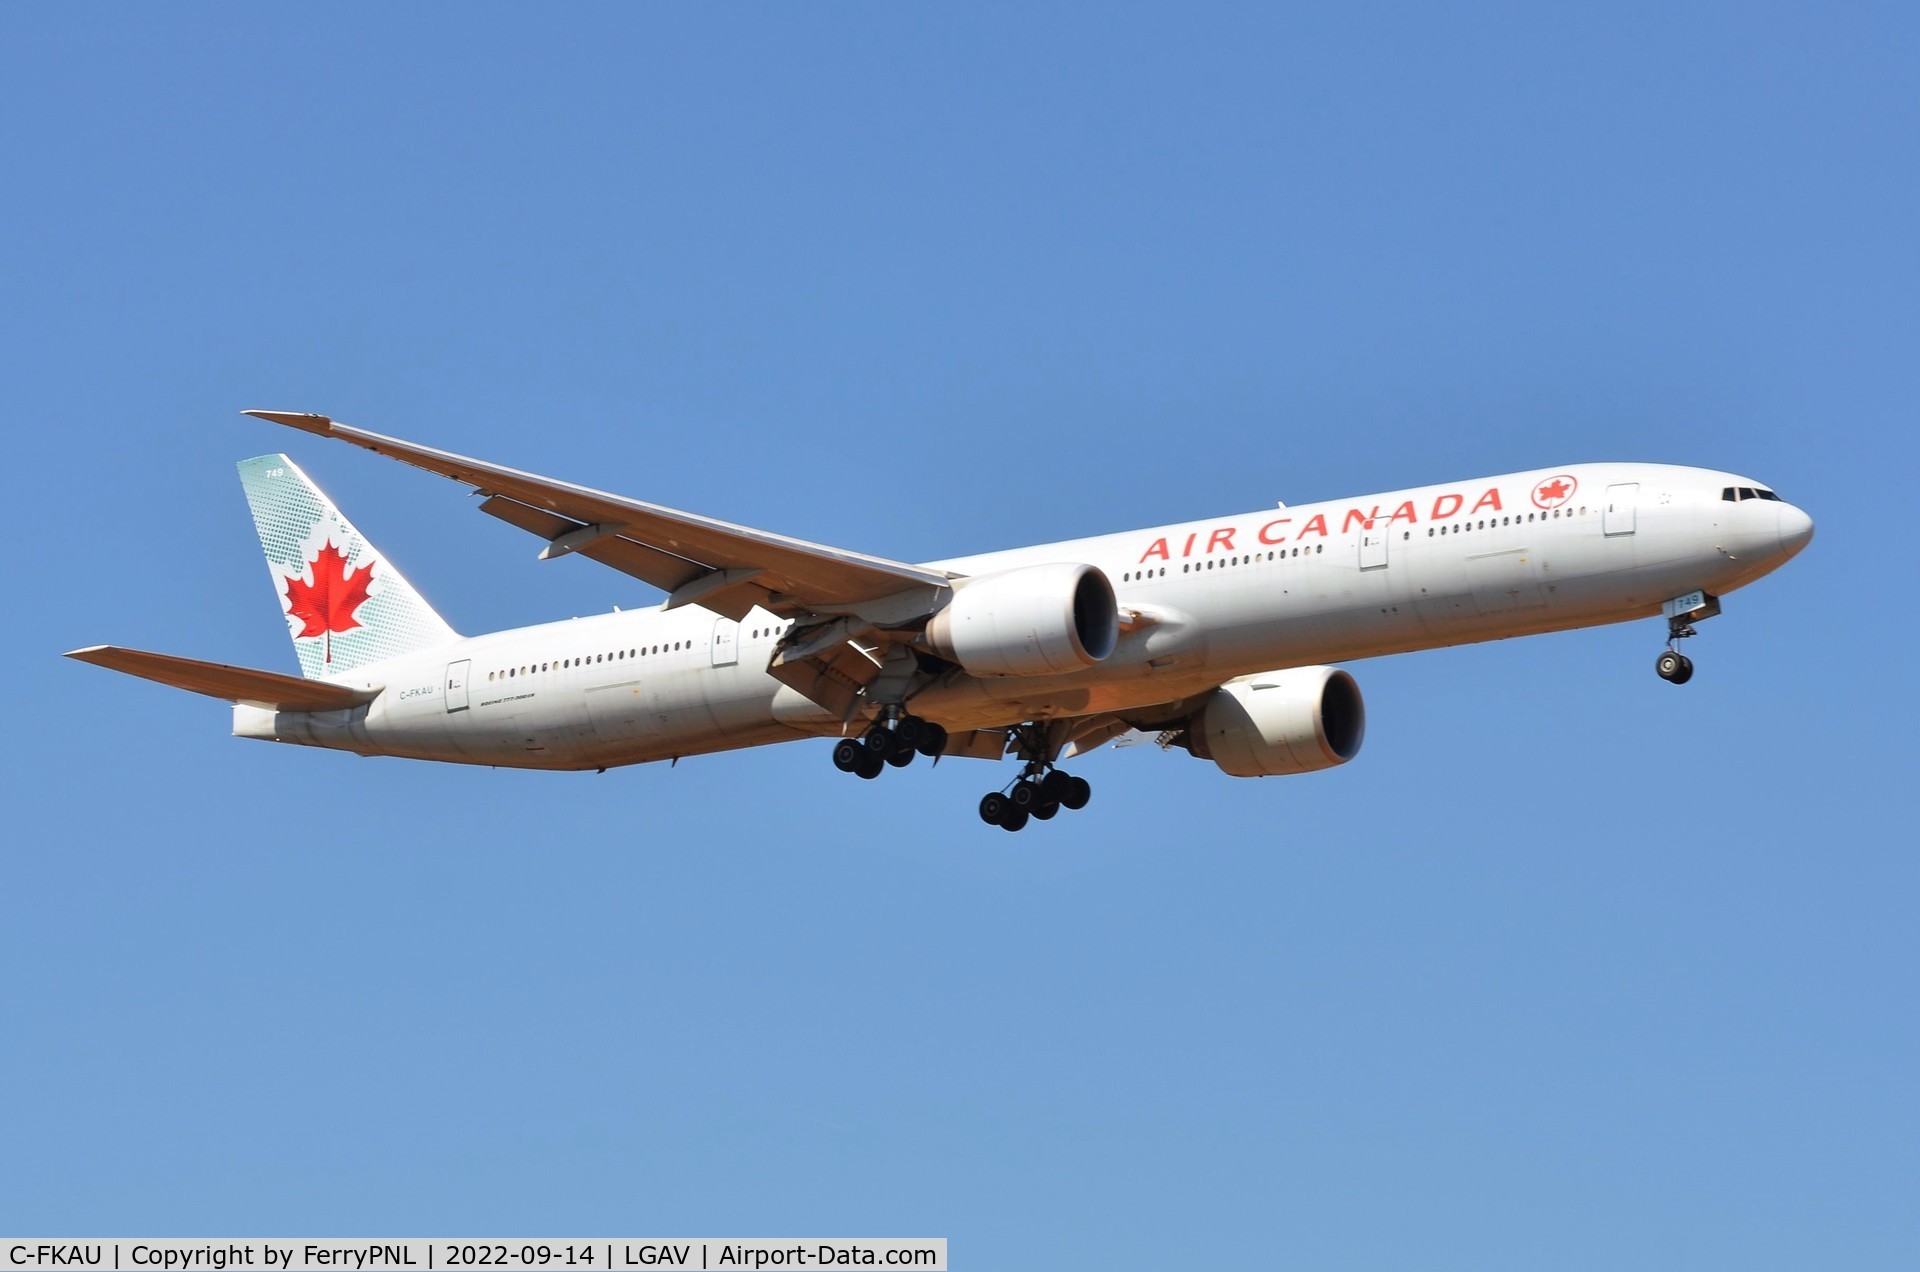 C-FKAU, 2016 Boeing 777-333/ER C/N 62401, Air Canada B773 landing